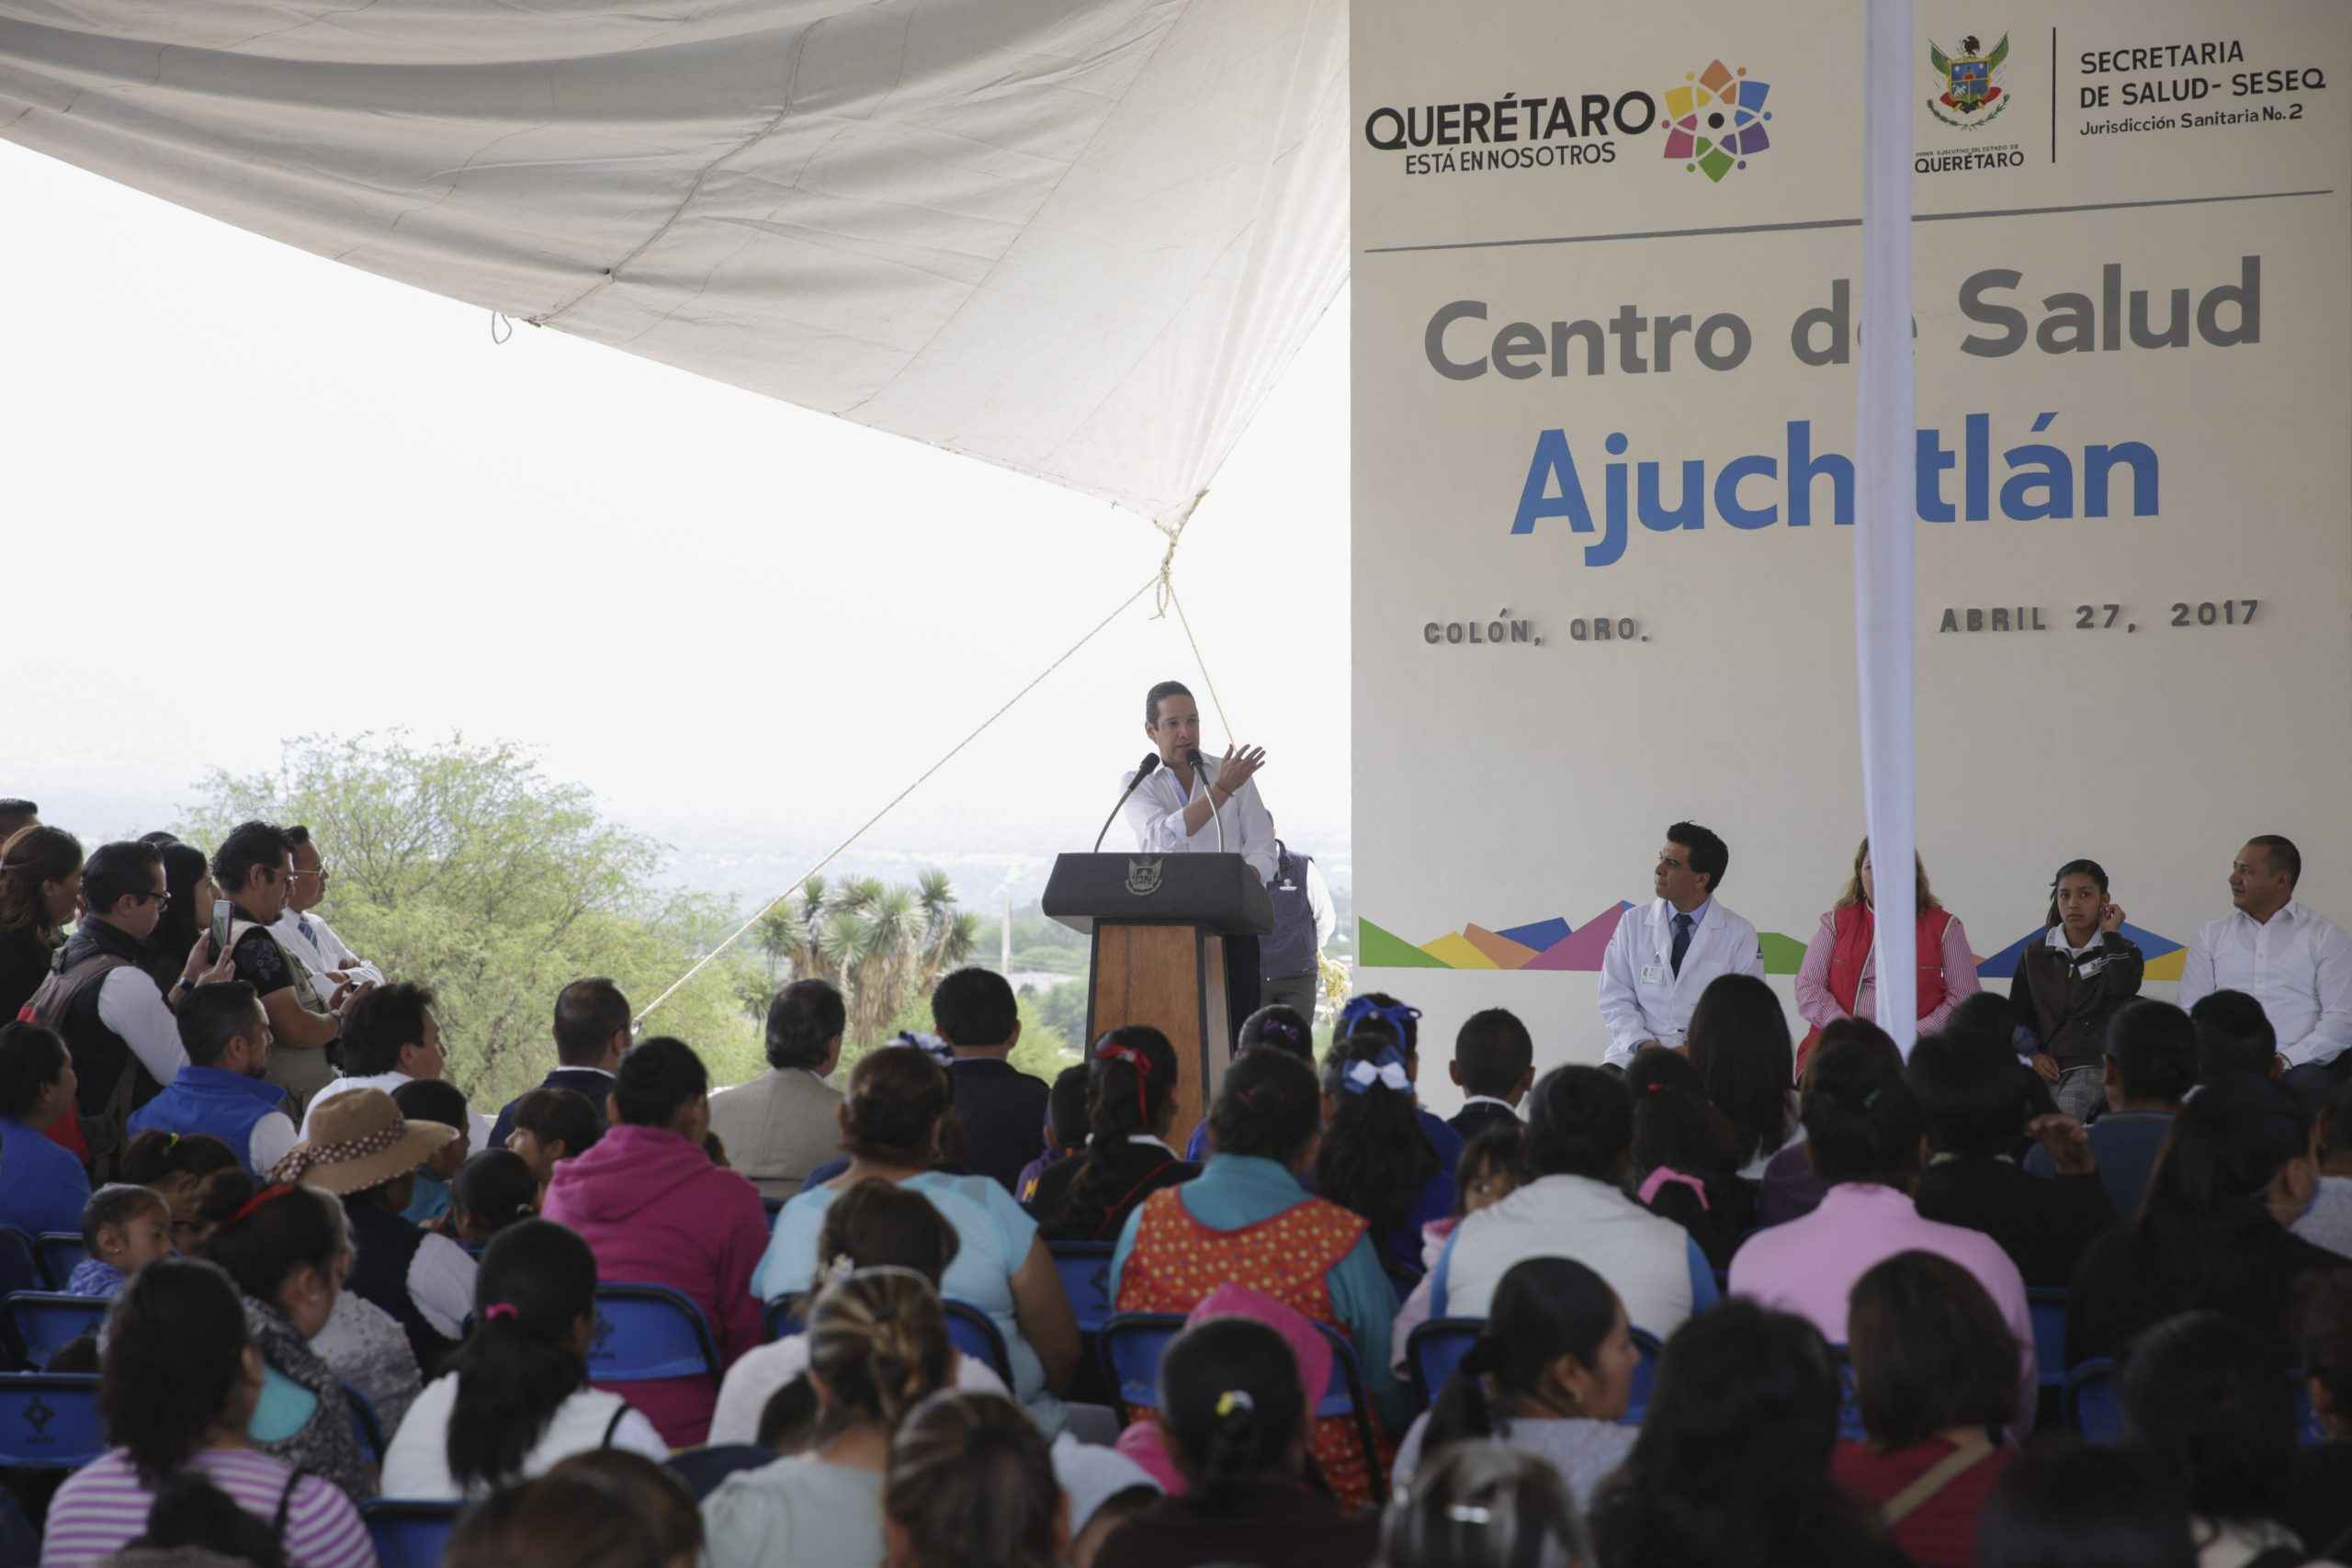 Impulsan obras de salud en Querétaro - 71 273 20473 1055974104 CentroSalud Colon 6 scaled